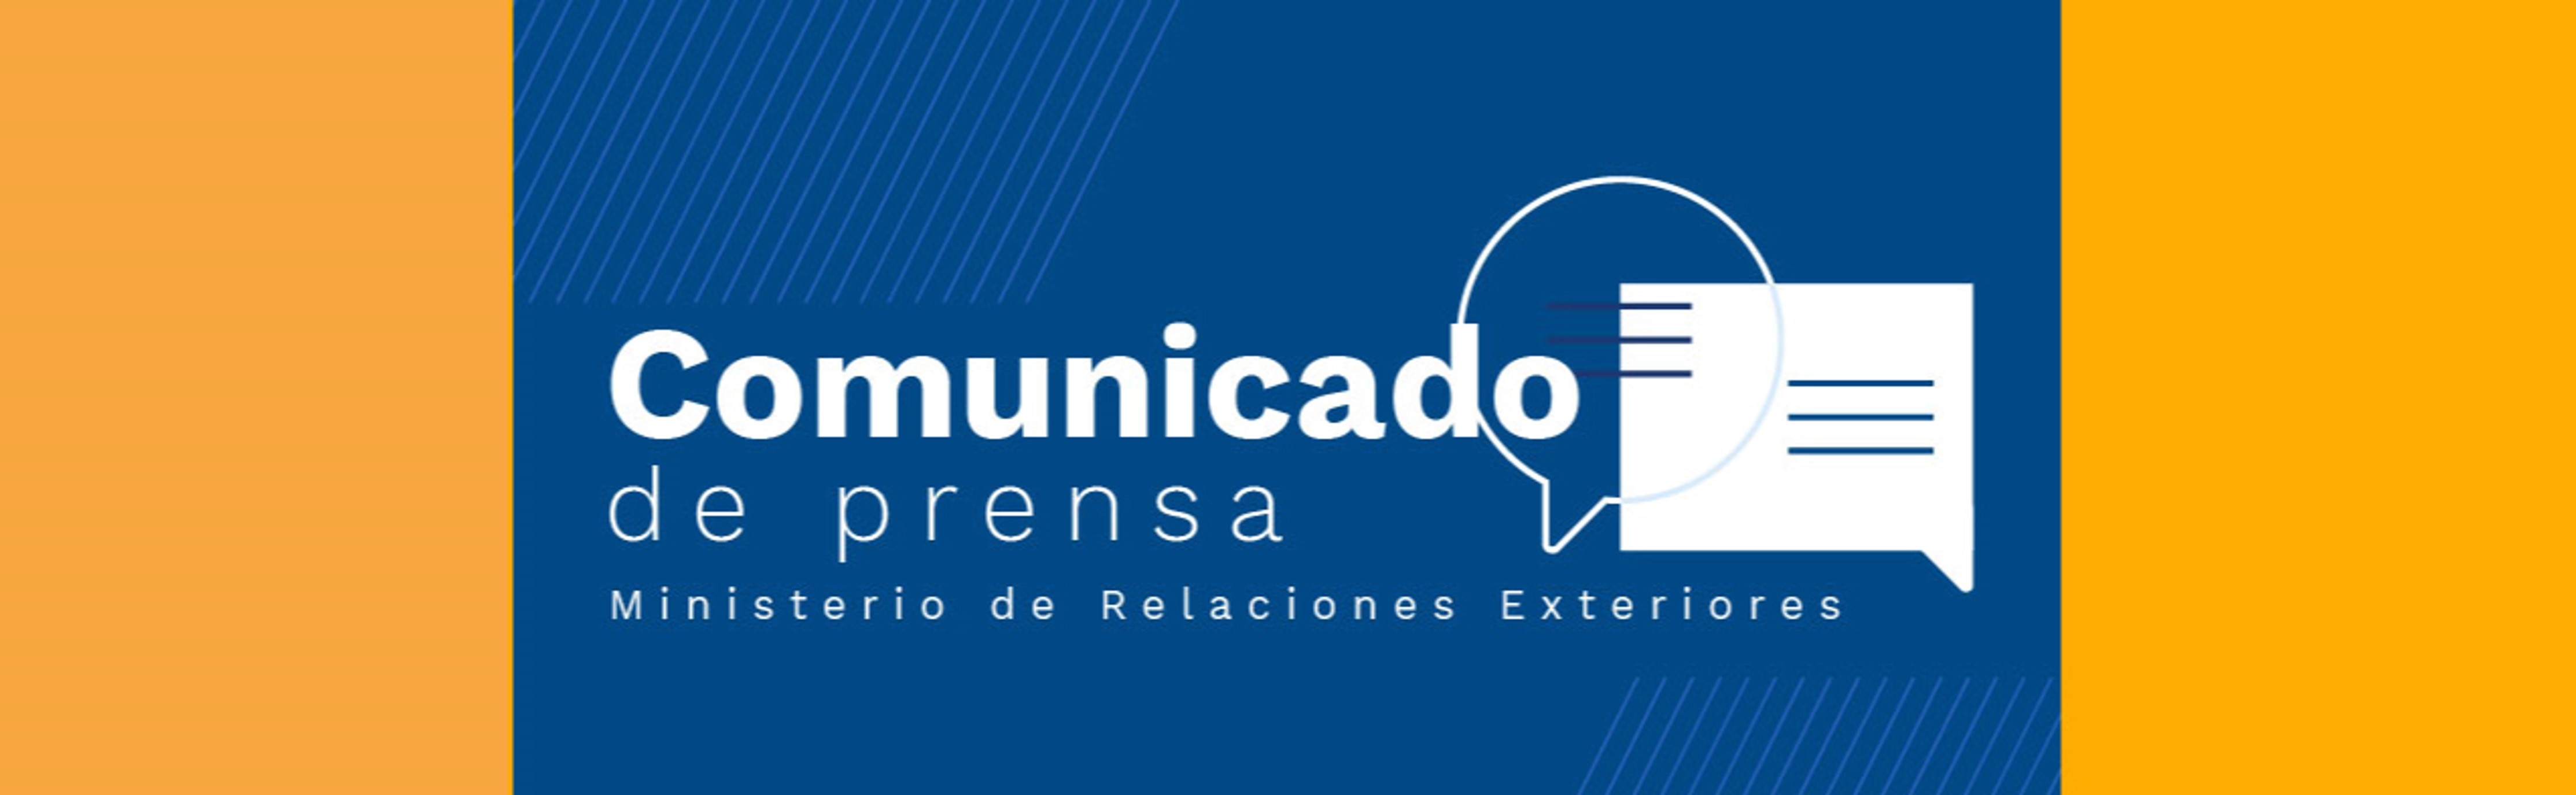 Comunicado de prensa de la Vicepresidente y Canciller, Marta Lucía Ramírez